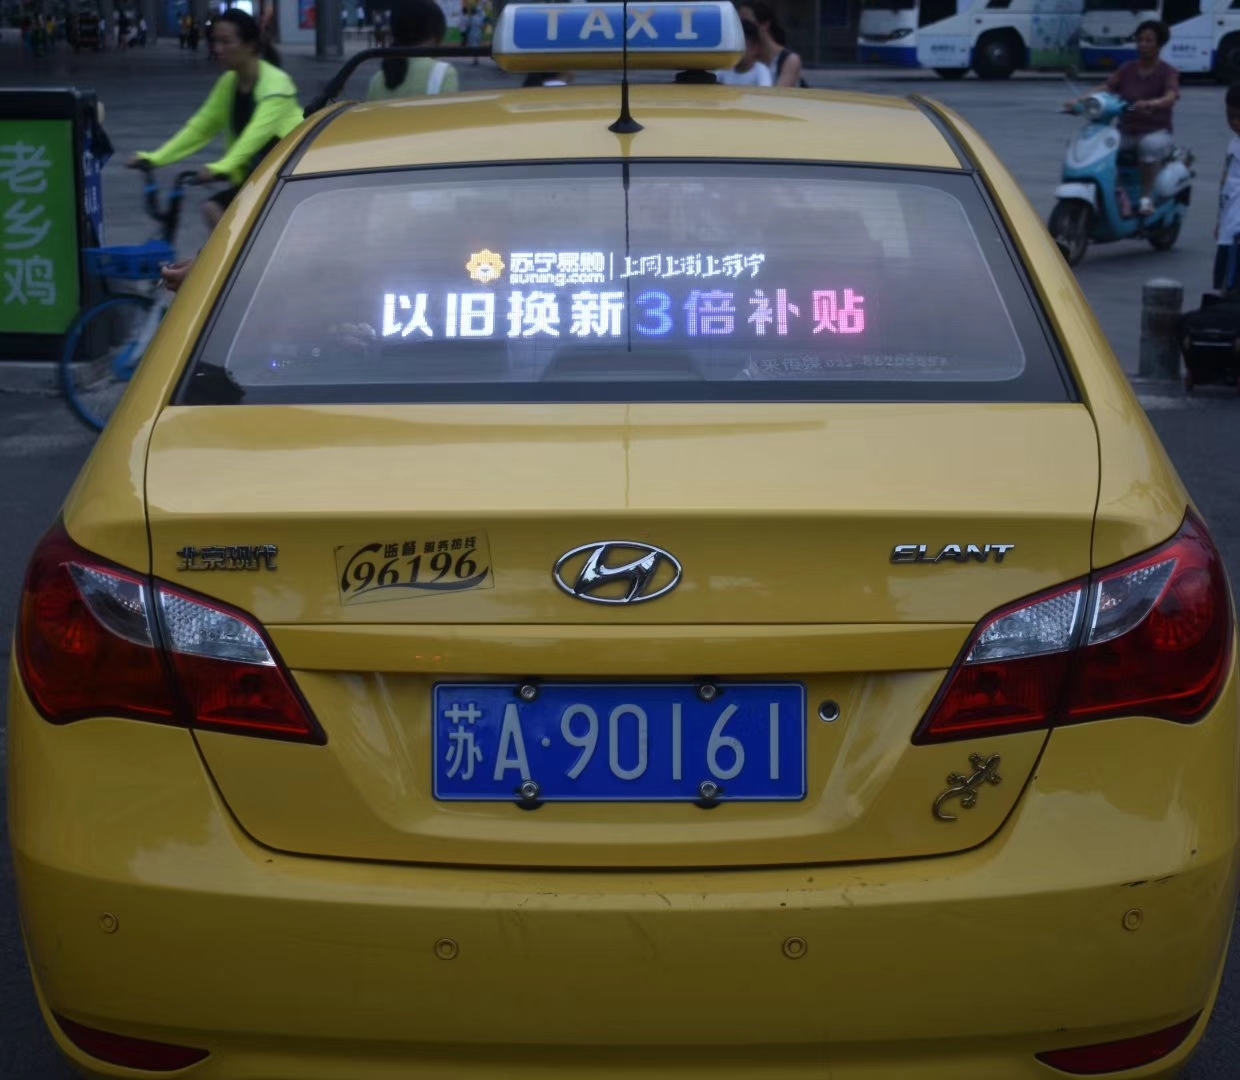 南京出租车车顶屏幕广告时段